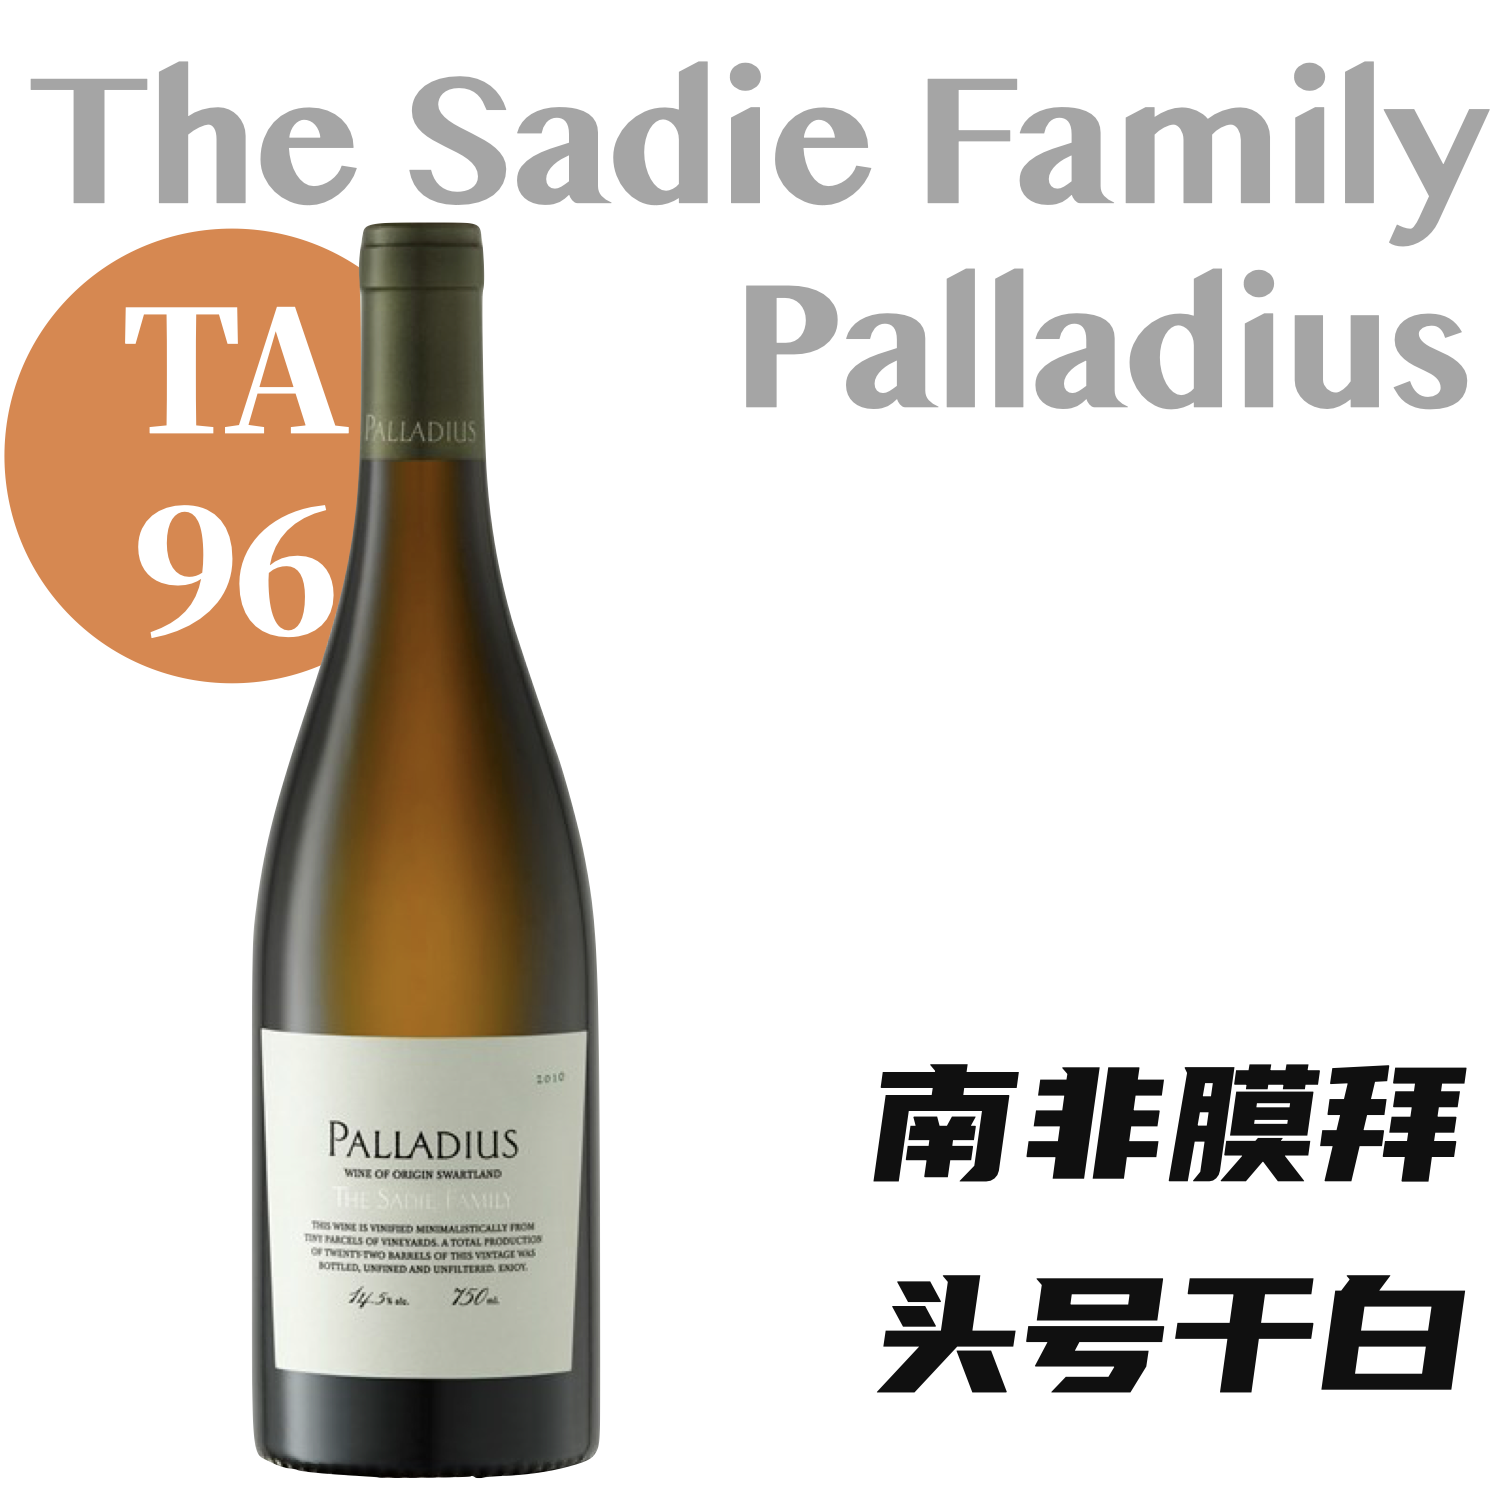 【仅5支·TA96南非头号膜拜干白】2016 赛蒂家族帕拉迪斯白葡萄酒 The Sadie Family "Palladius" White